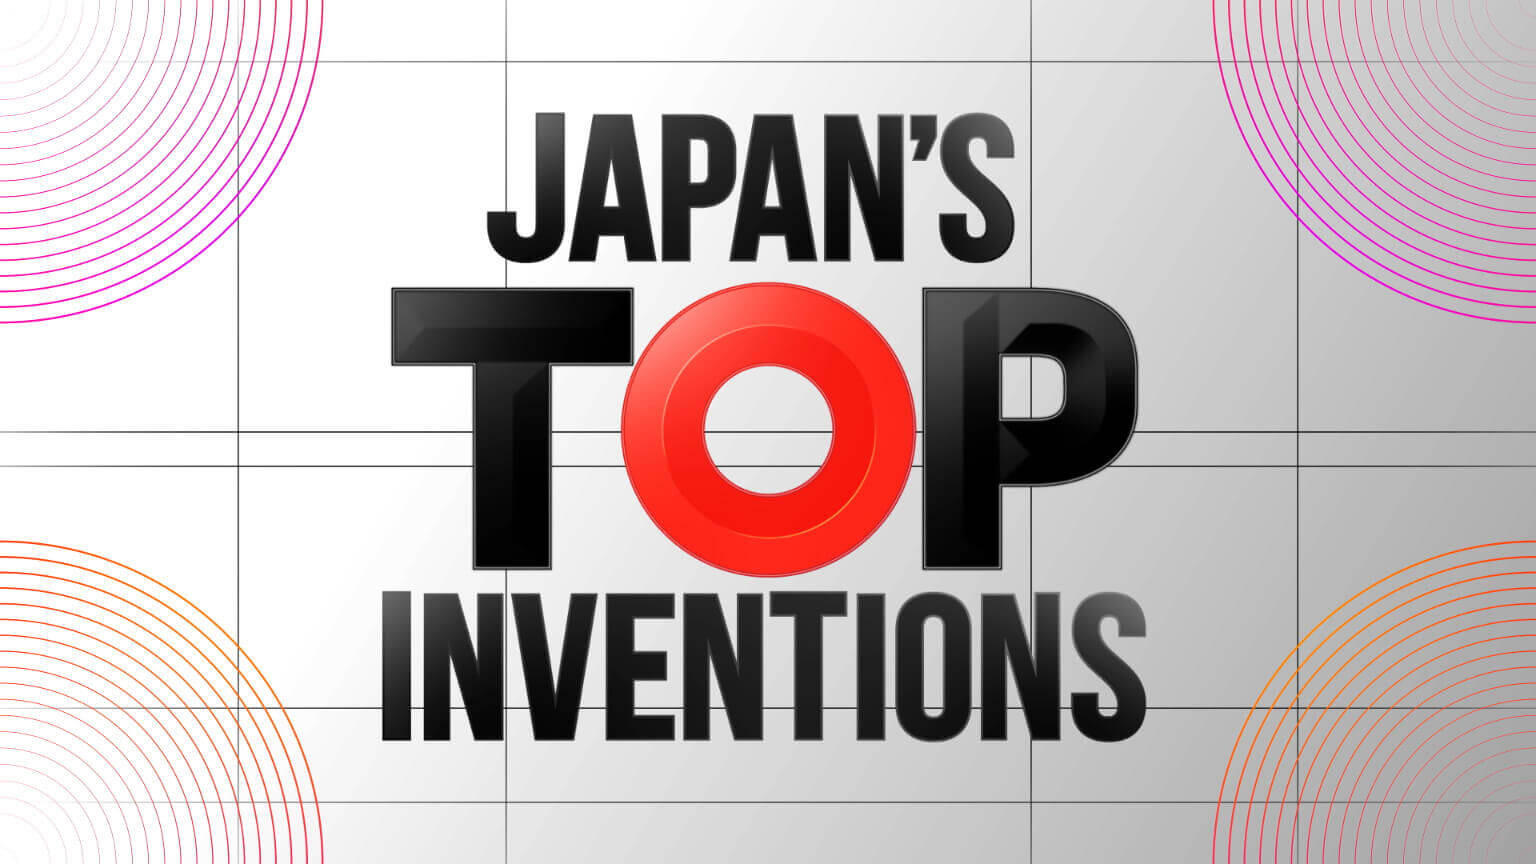 Penemuan Top Jepang
Japan's Top Inventions